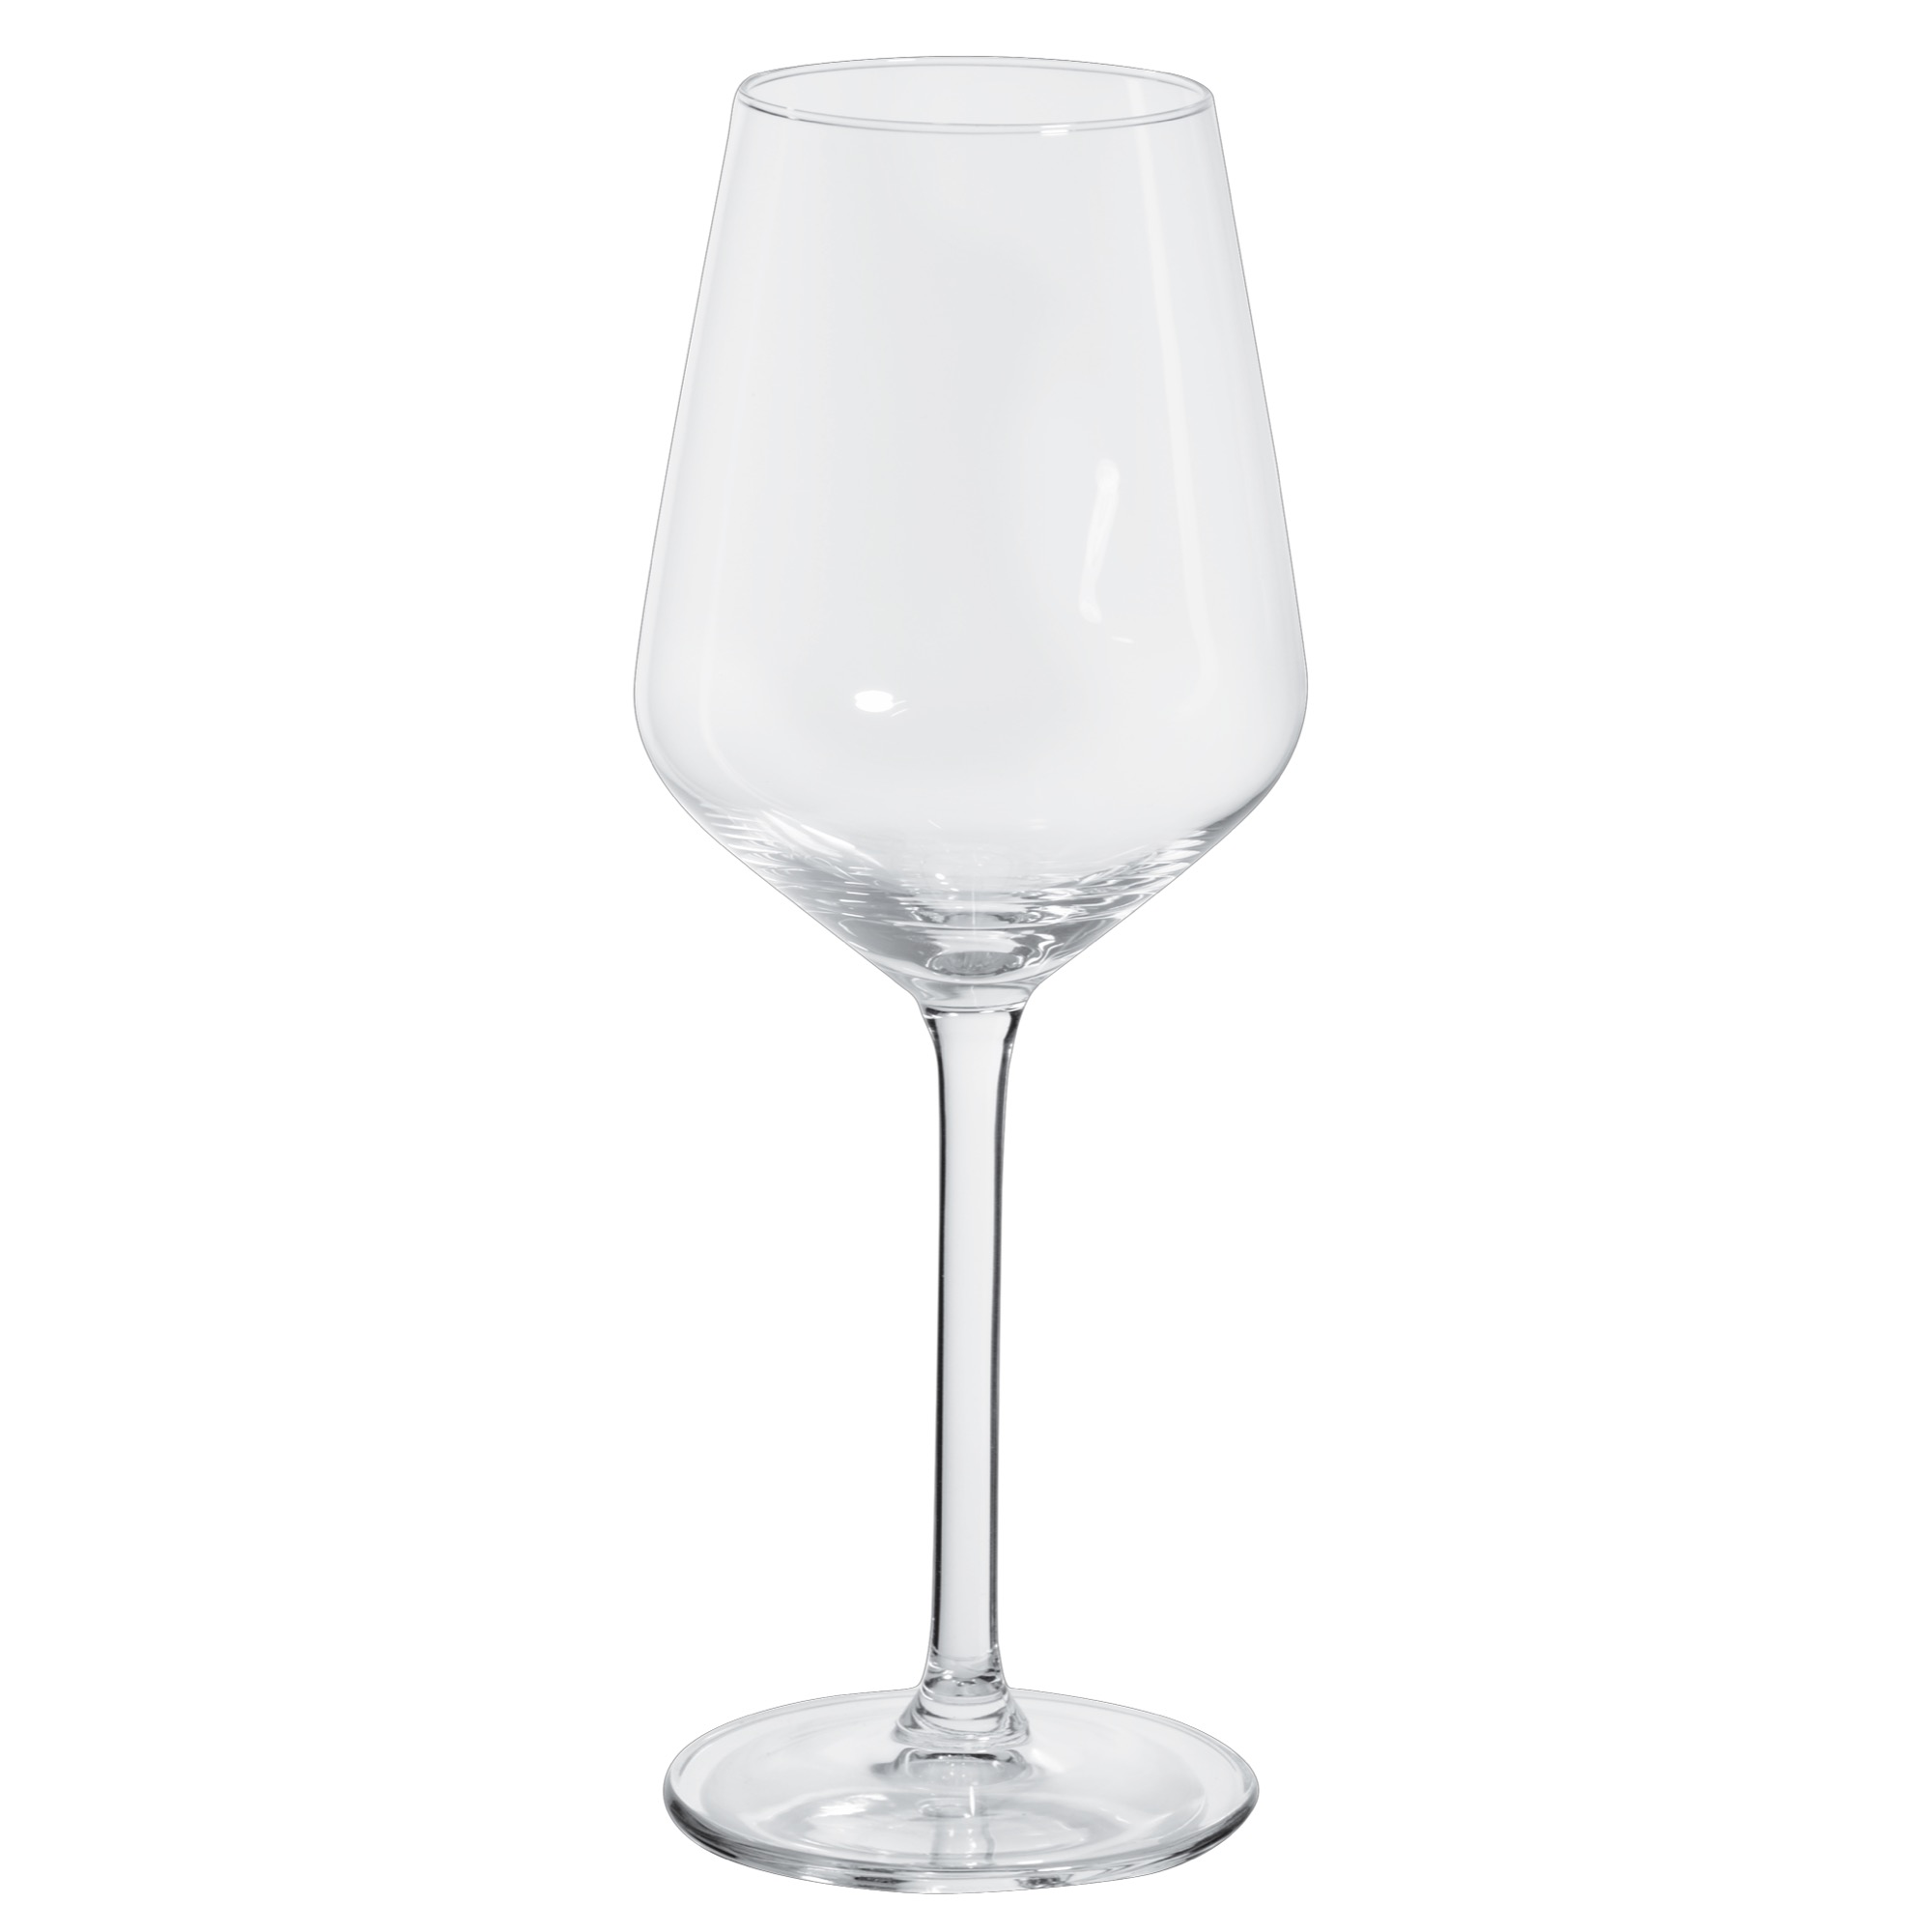 Royal Carré pohár/víno 380ml